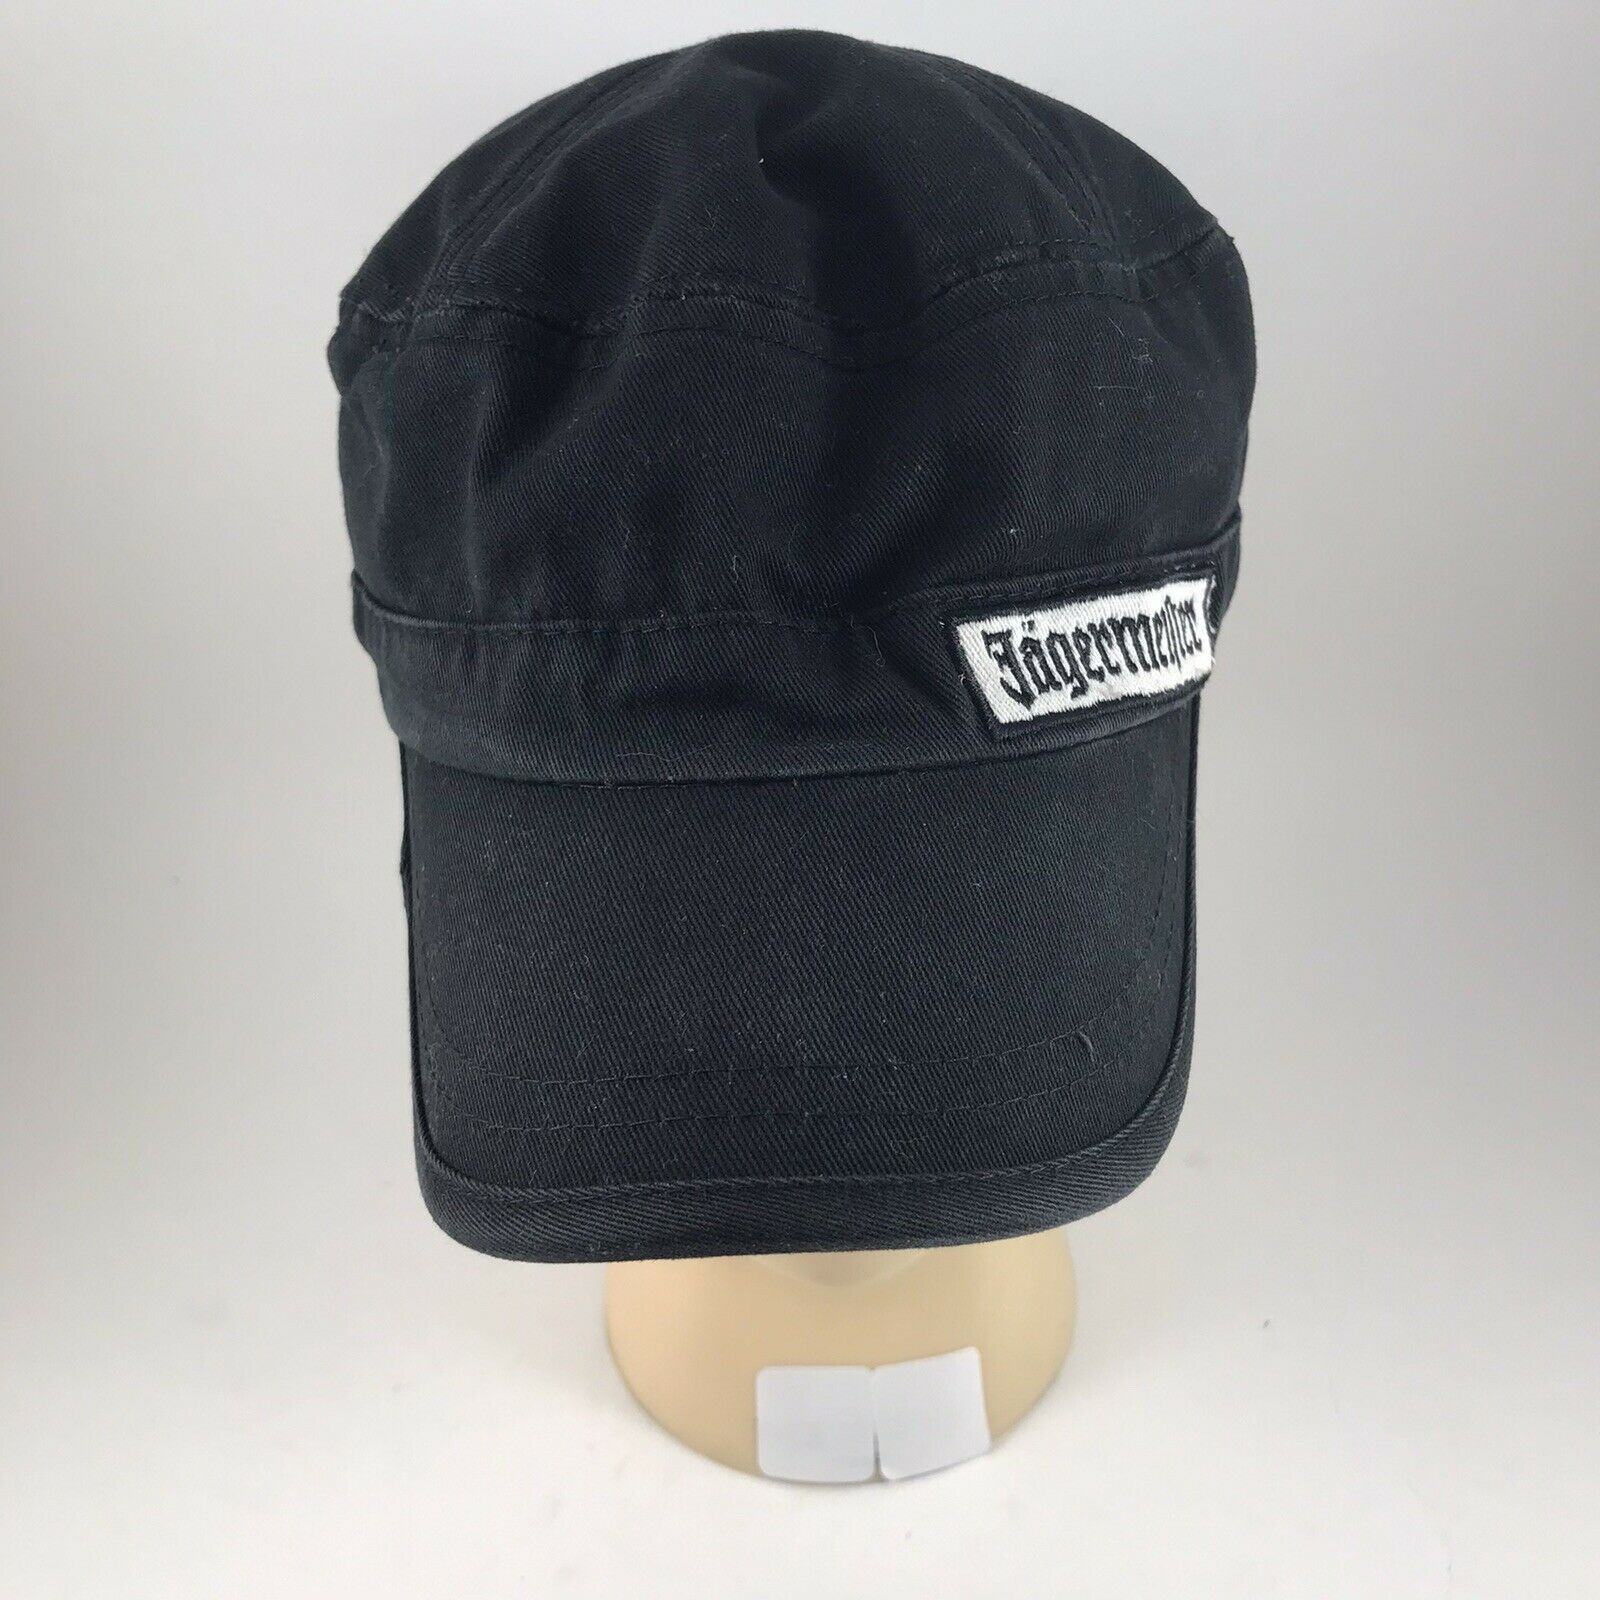 Jagermeister Offset Logo Patch Adjustable Cadet Hat Strapback Flat Cap Black